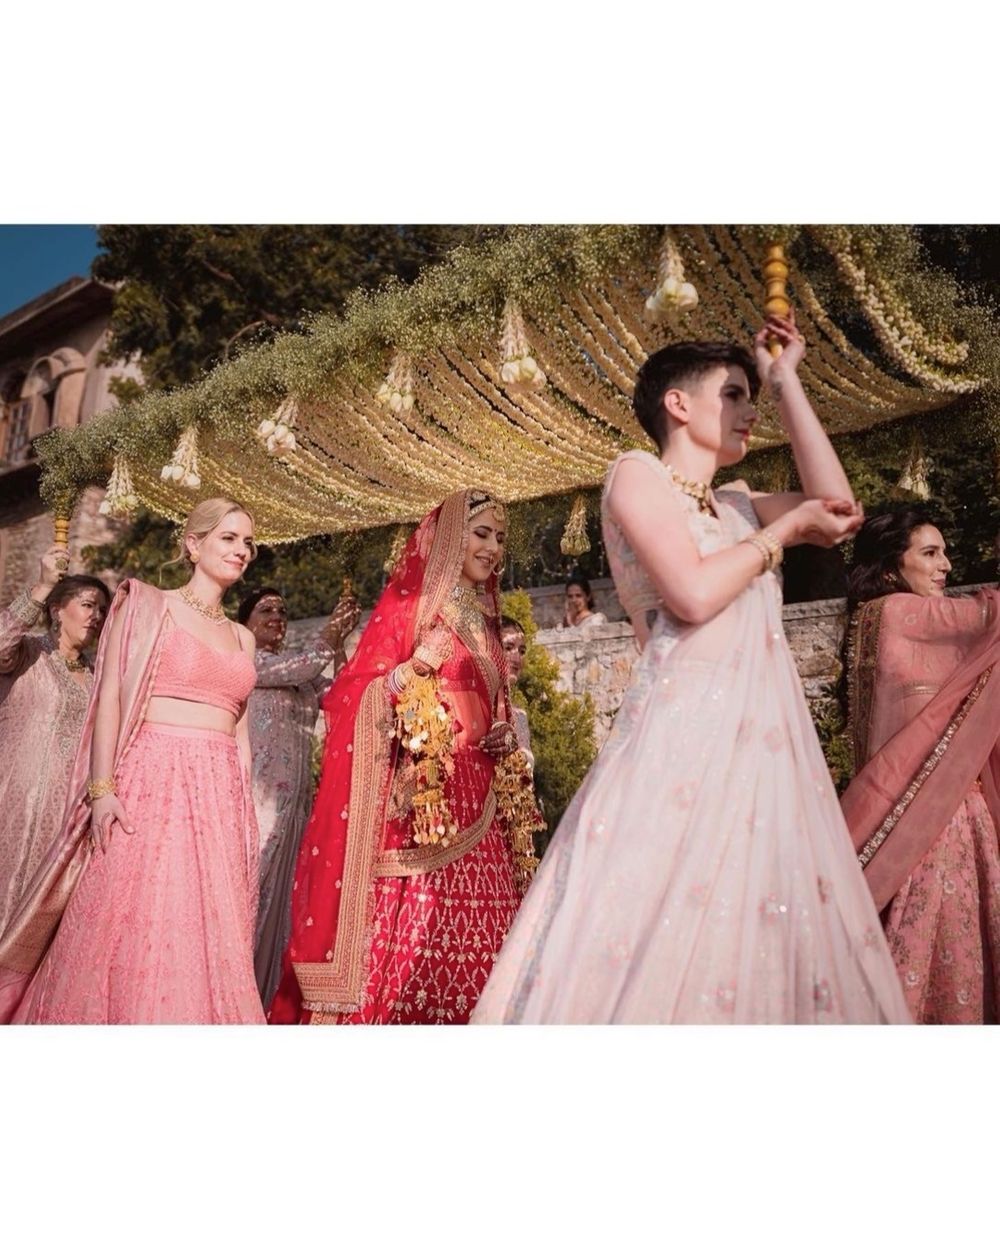 Photo From Katrina’s Wedding - By Ankita Manwani Makeup and Hair